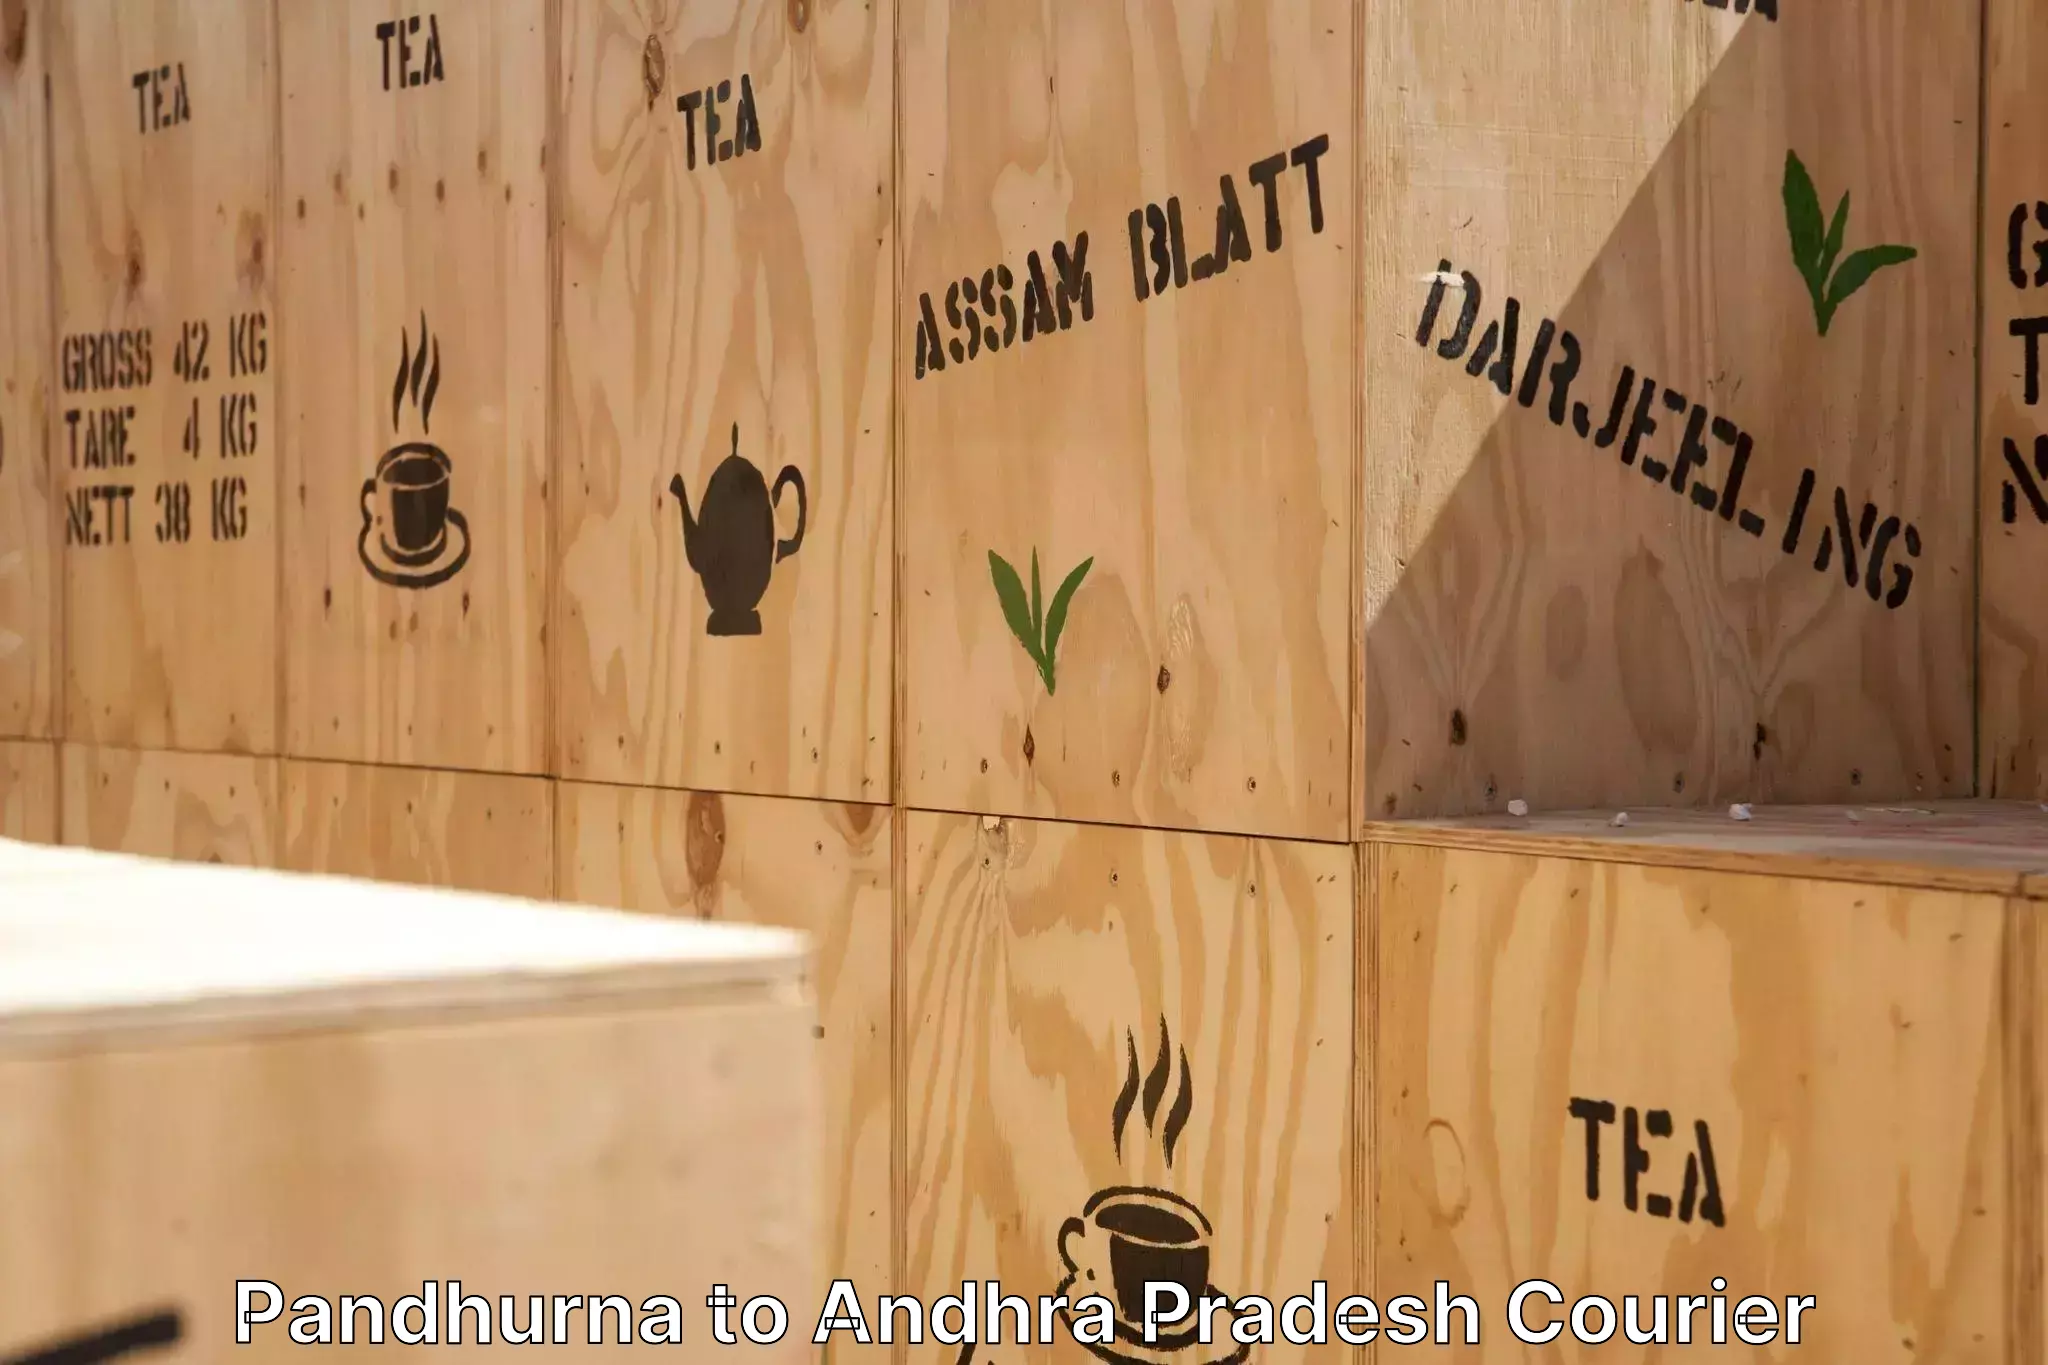 Furniture moving experts in Pandhurna to Kakinada